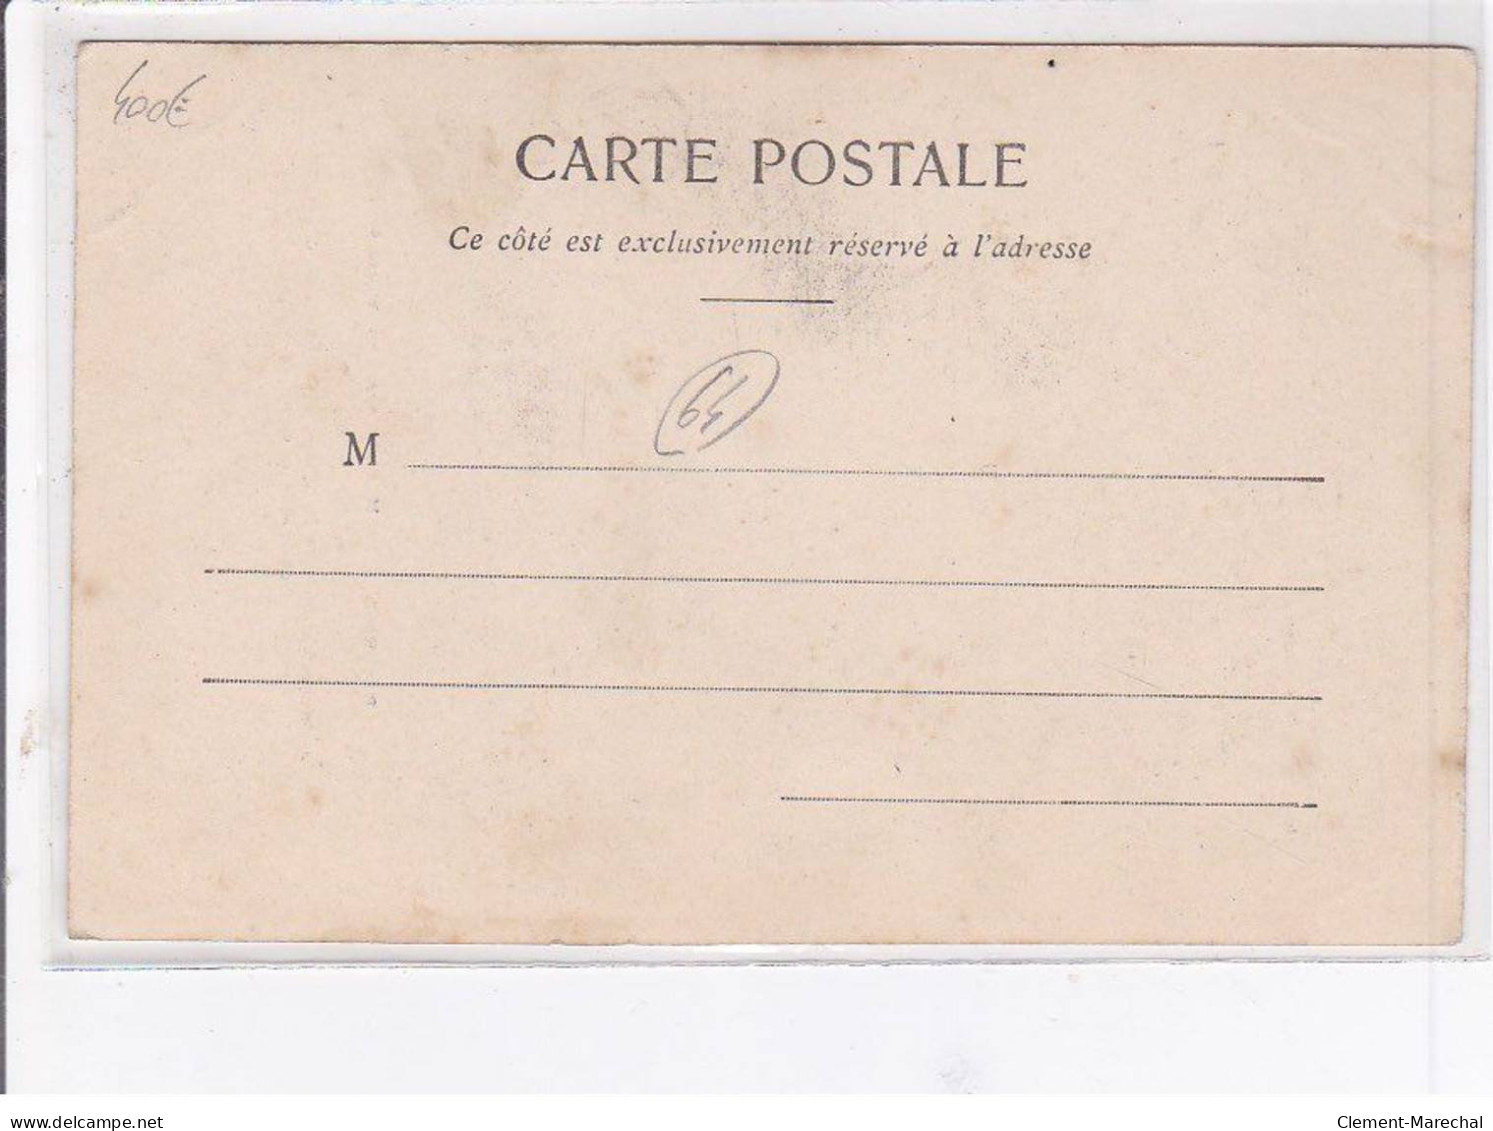 BIARRITZ - Le Magasin "Au Souvenir" - Maison Spéciale De Vente De Cartes Postales - Très Bon état - Biarritz